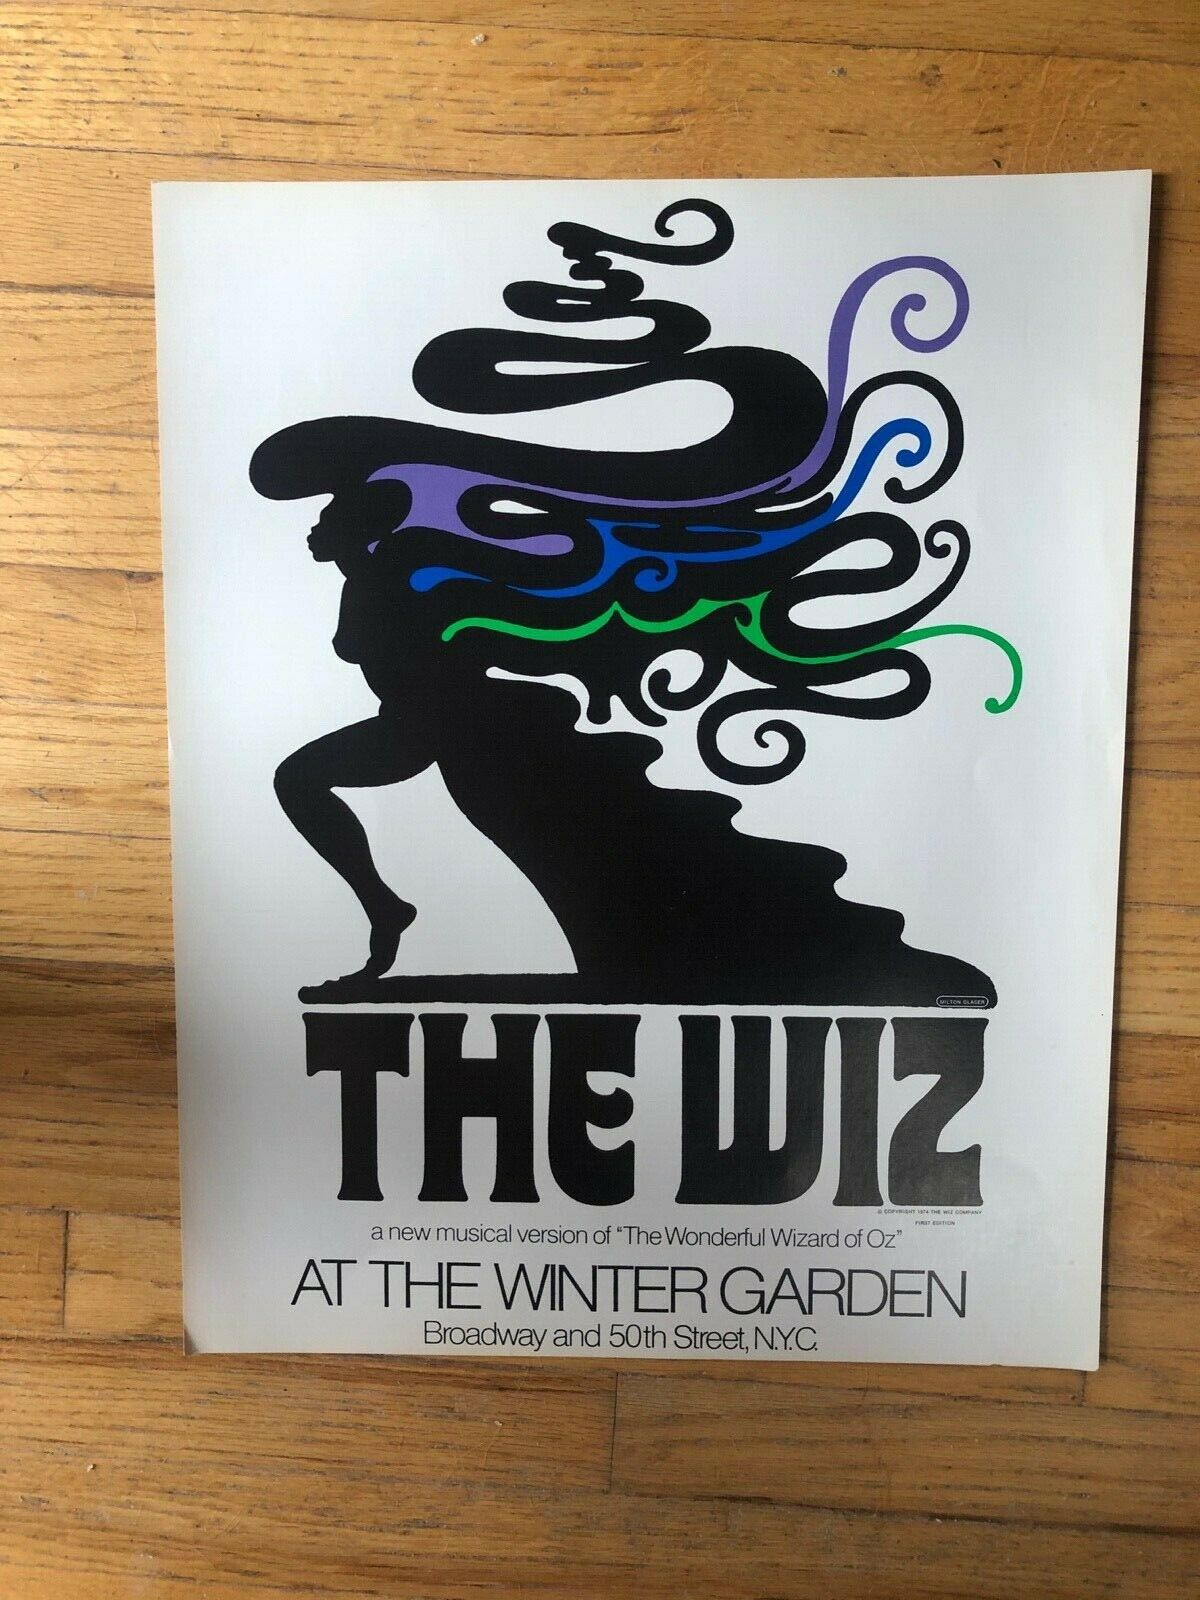 Rare Original 1974 First Edition Wiz Poster